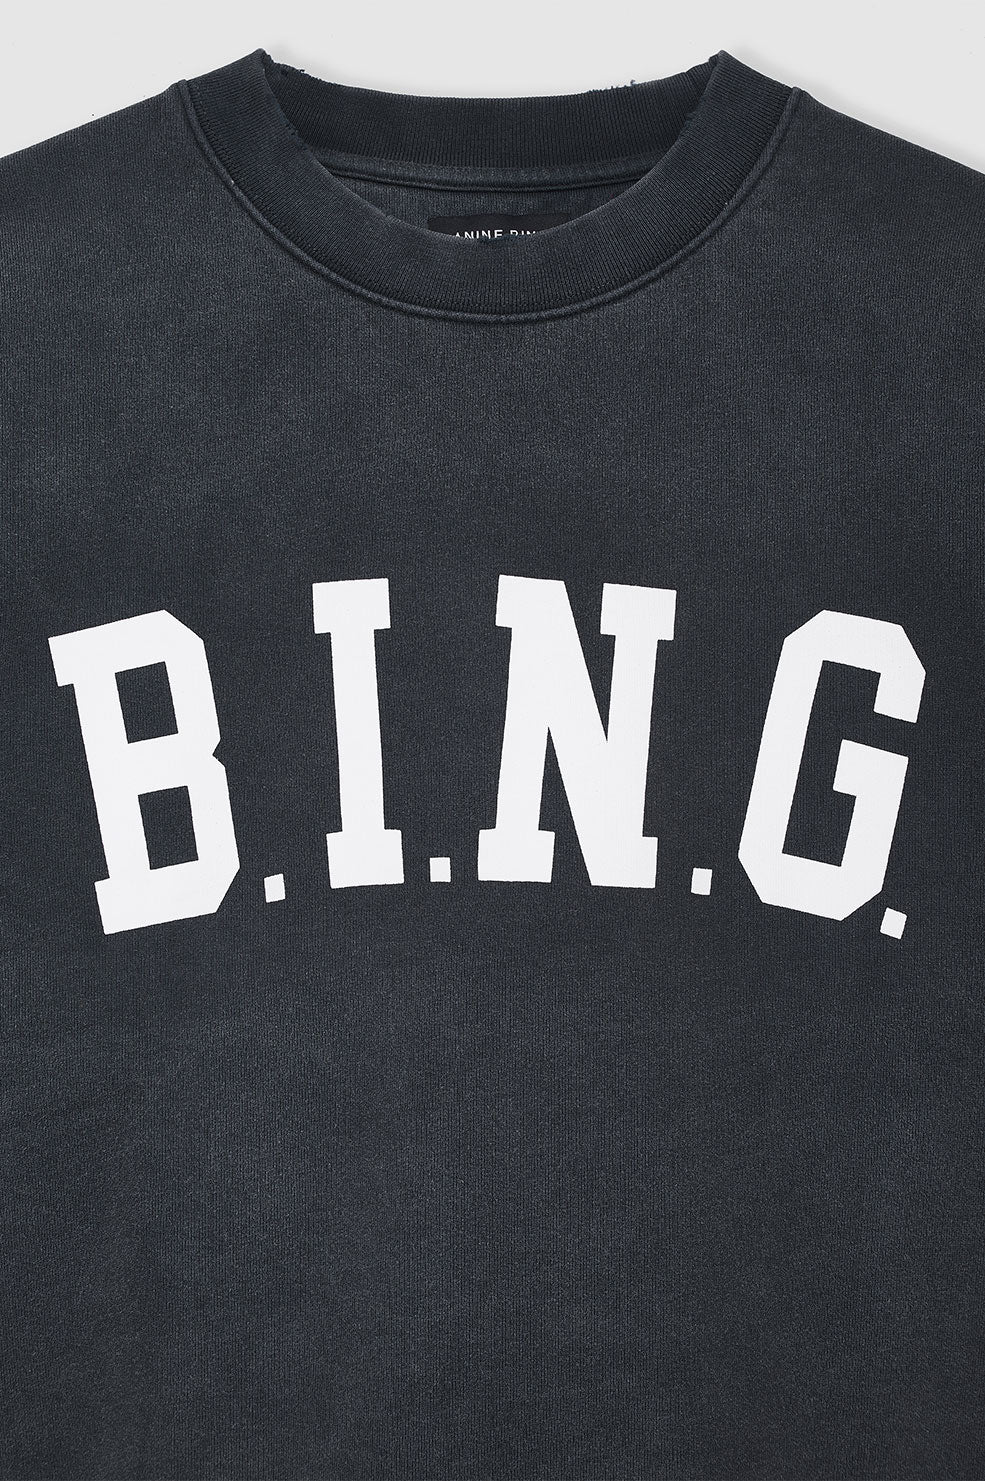 ANINE BING Tyler Sweatshirt Bing - Washed Black - Detail View